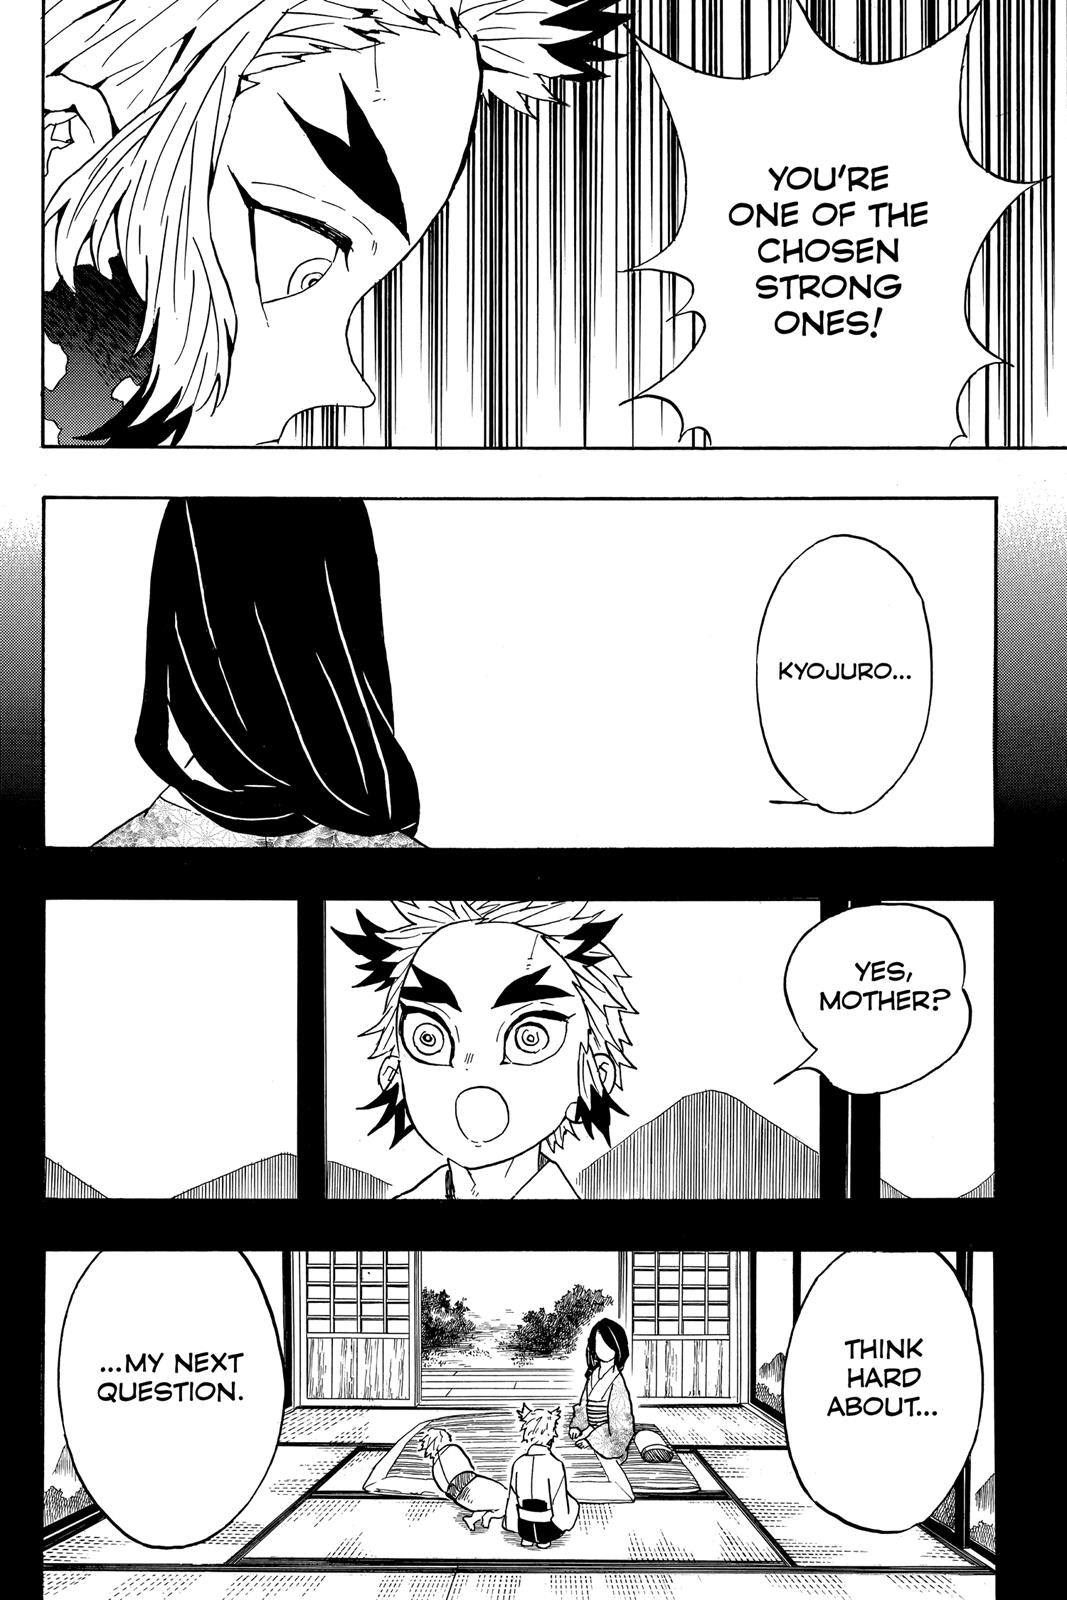 Demon Slayer Manga Manga Chapter - 64 - image 9